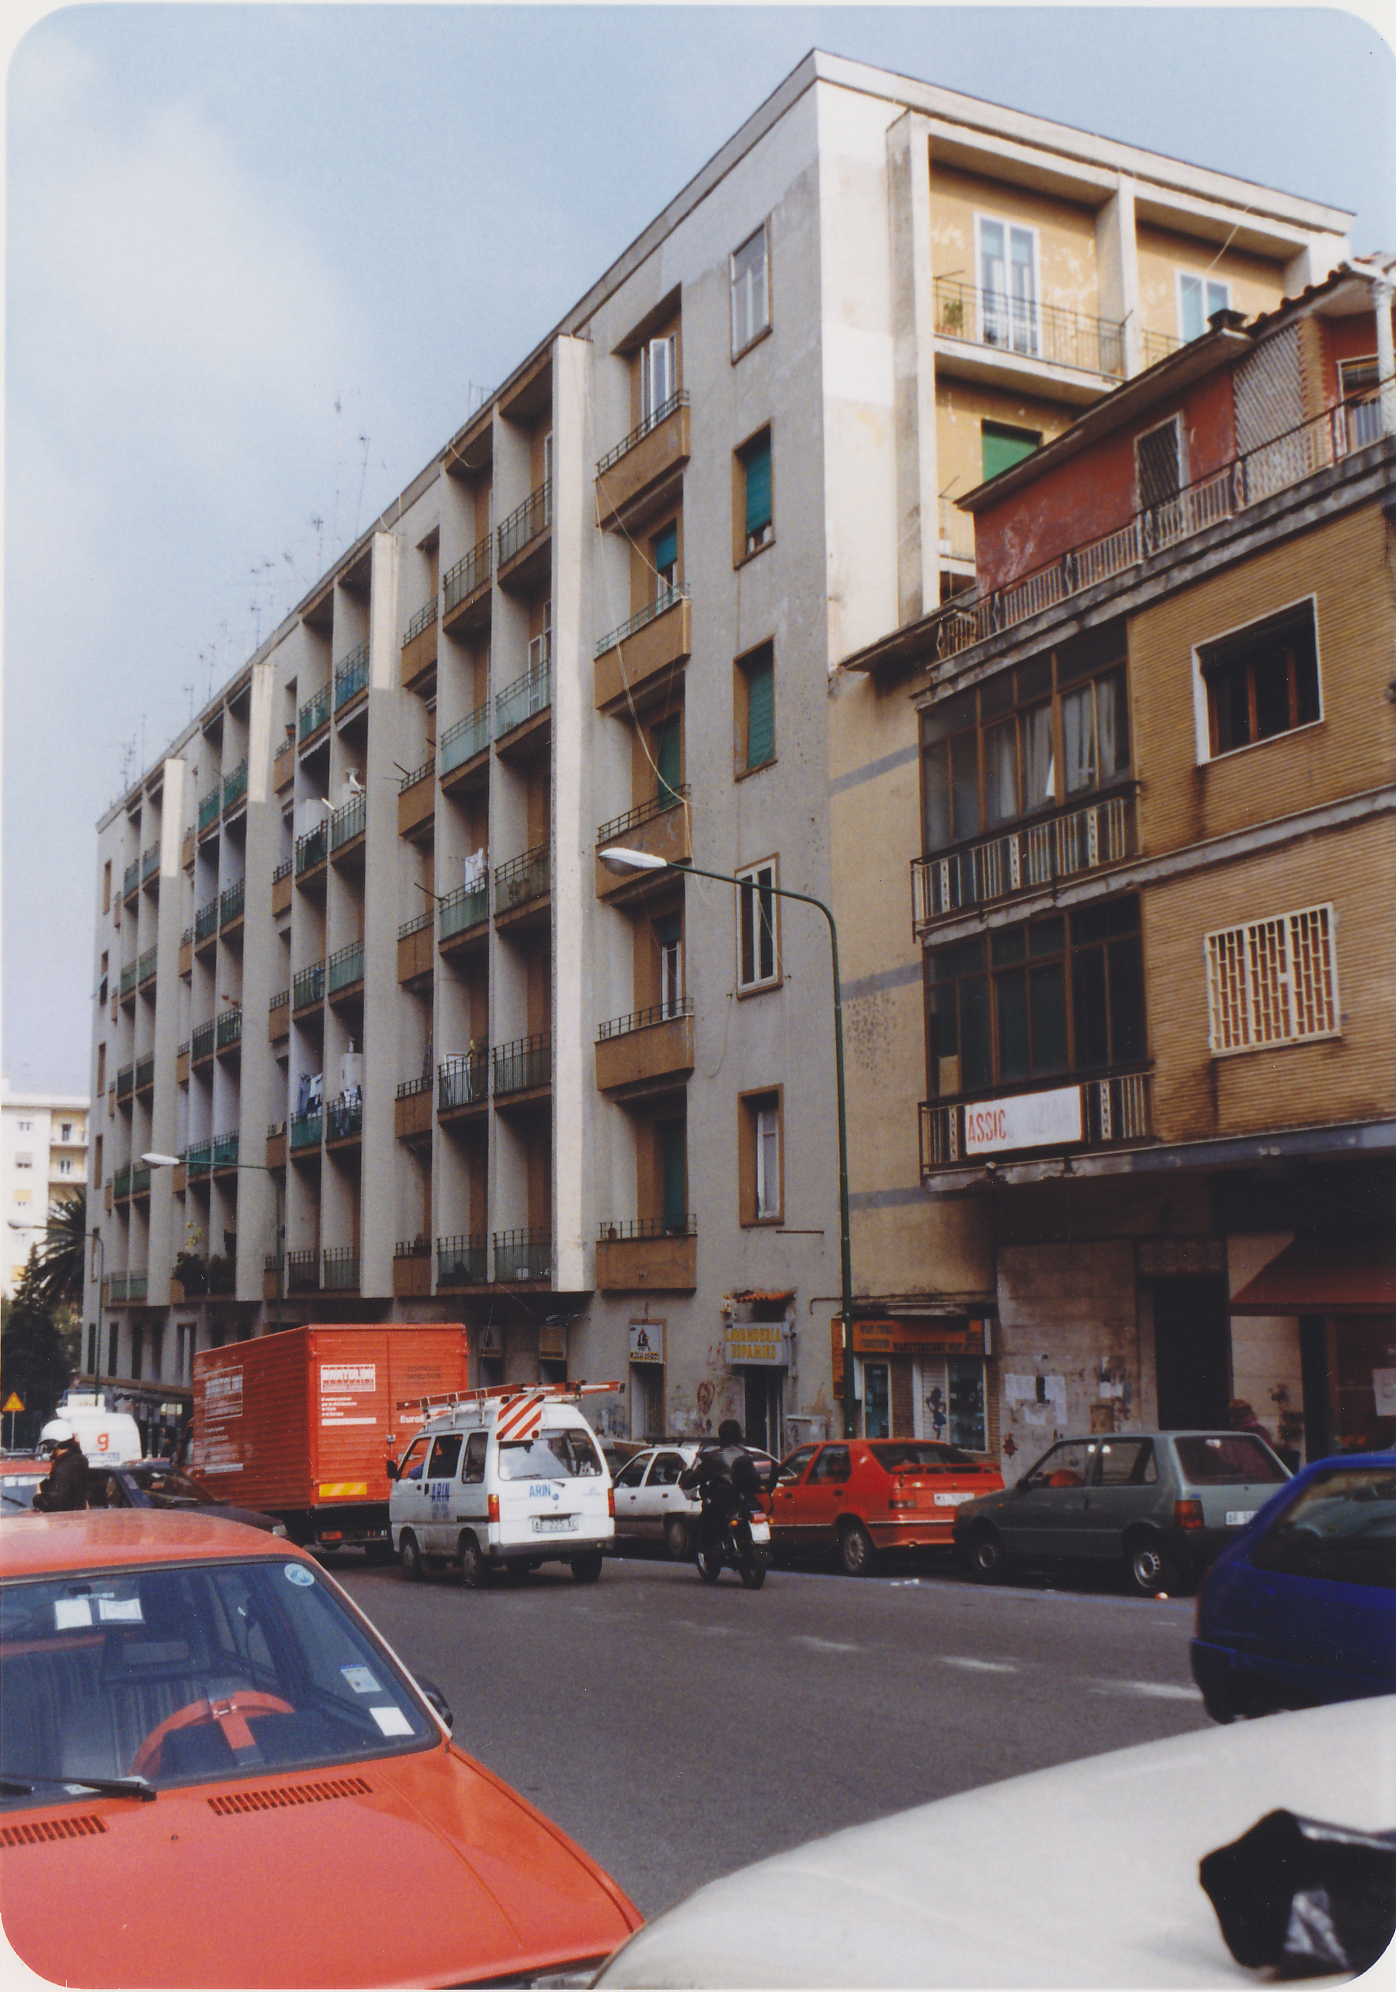 ignota - via M. Fiore, 4, via S. Gennaro ad Antignano (palazzo, residenziale) - Napoli (NA) 